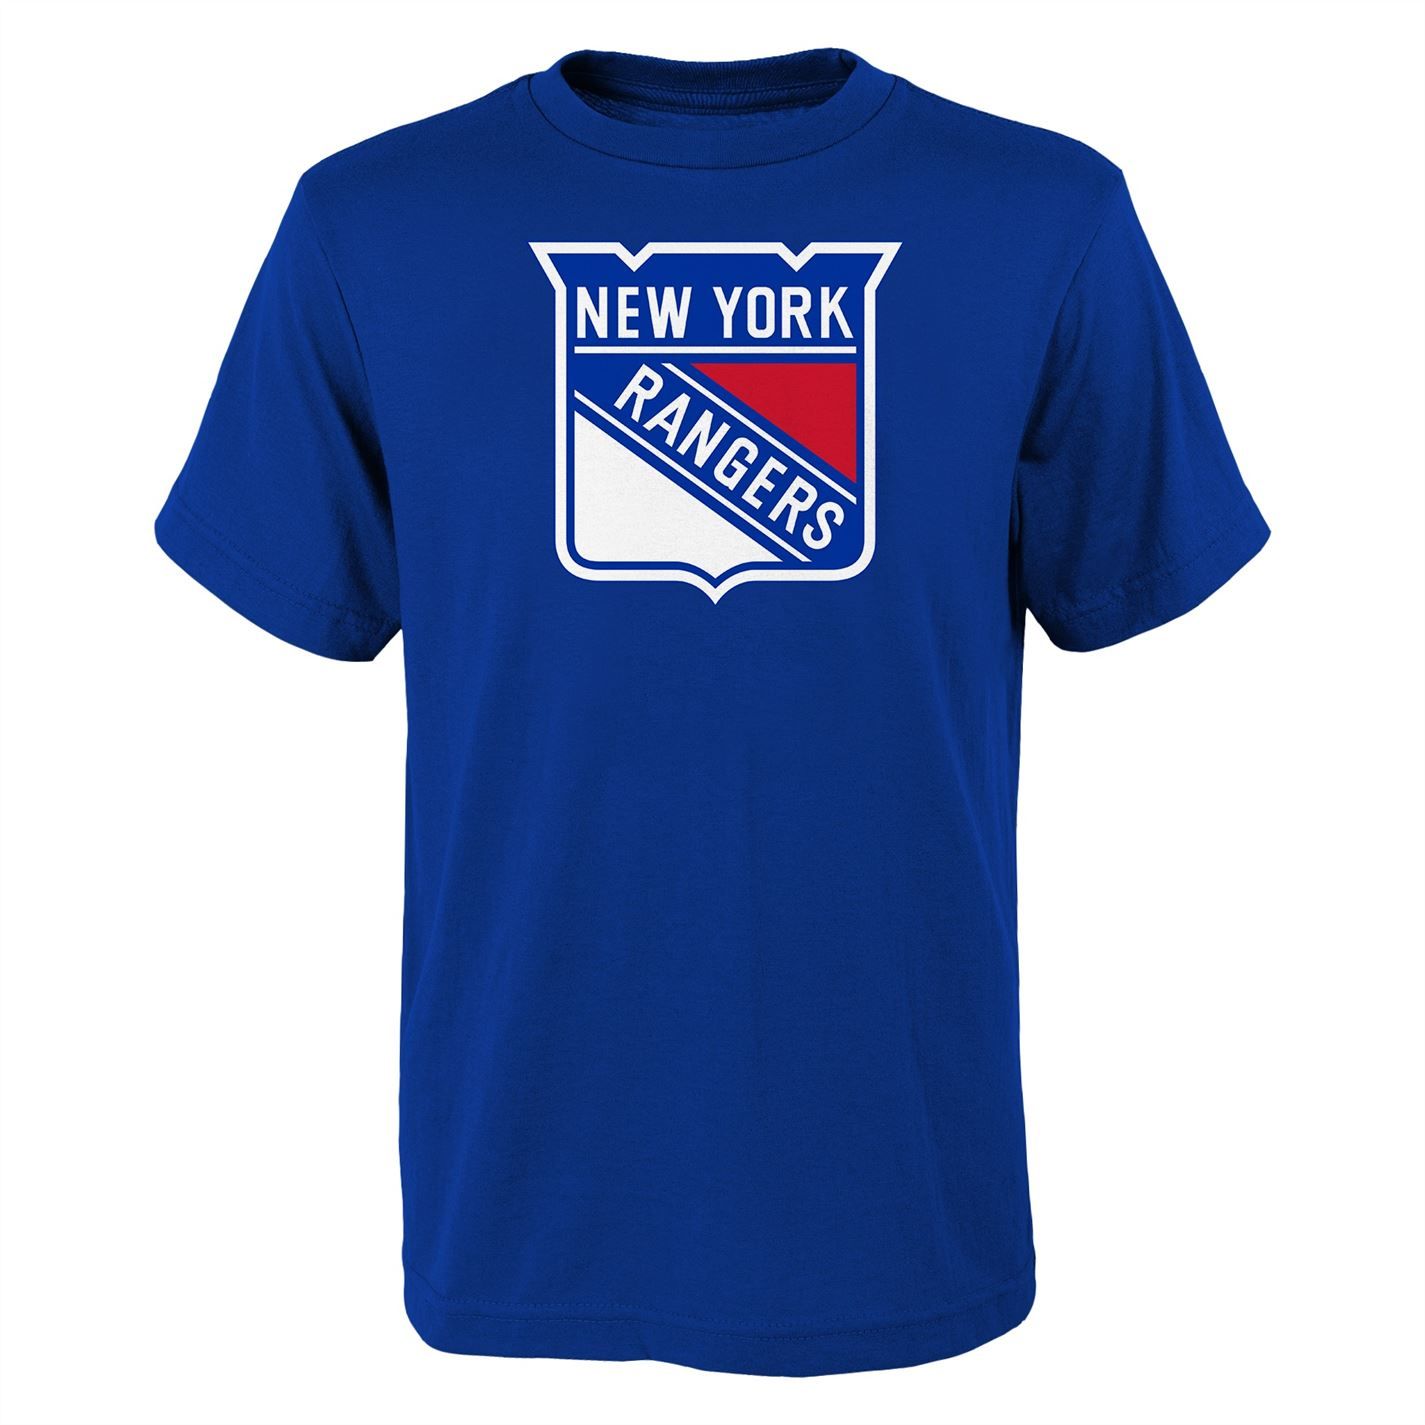 dětské tričko NHL - NY RANGERS - 152 11-12 let